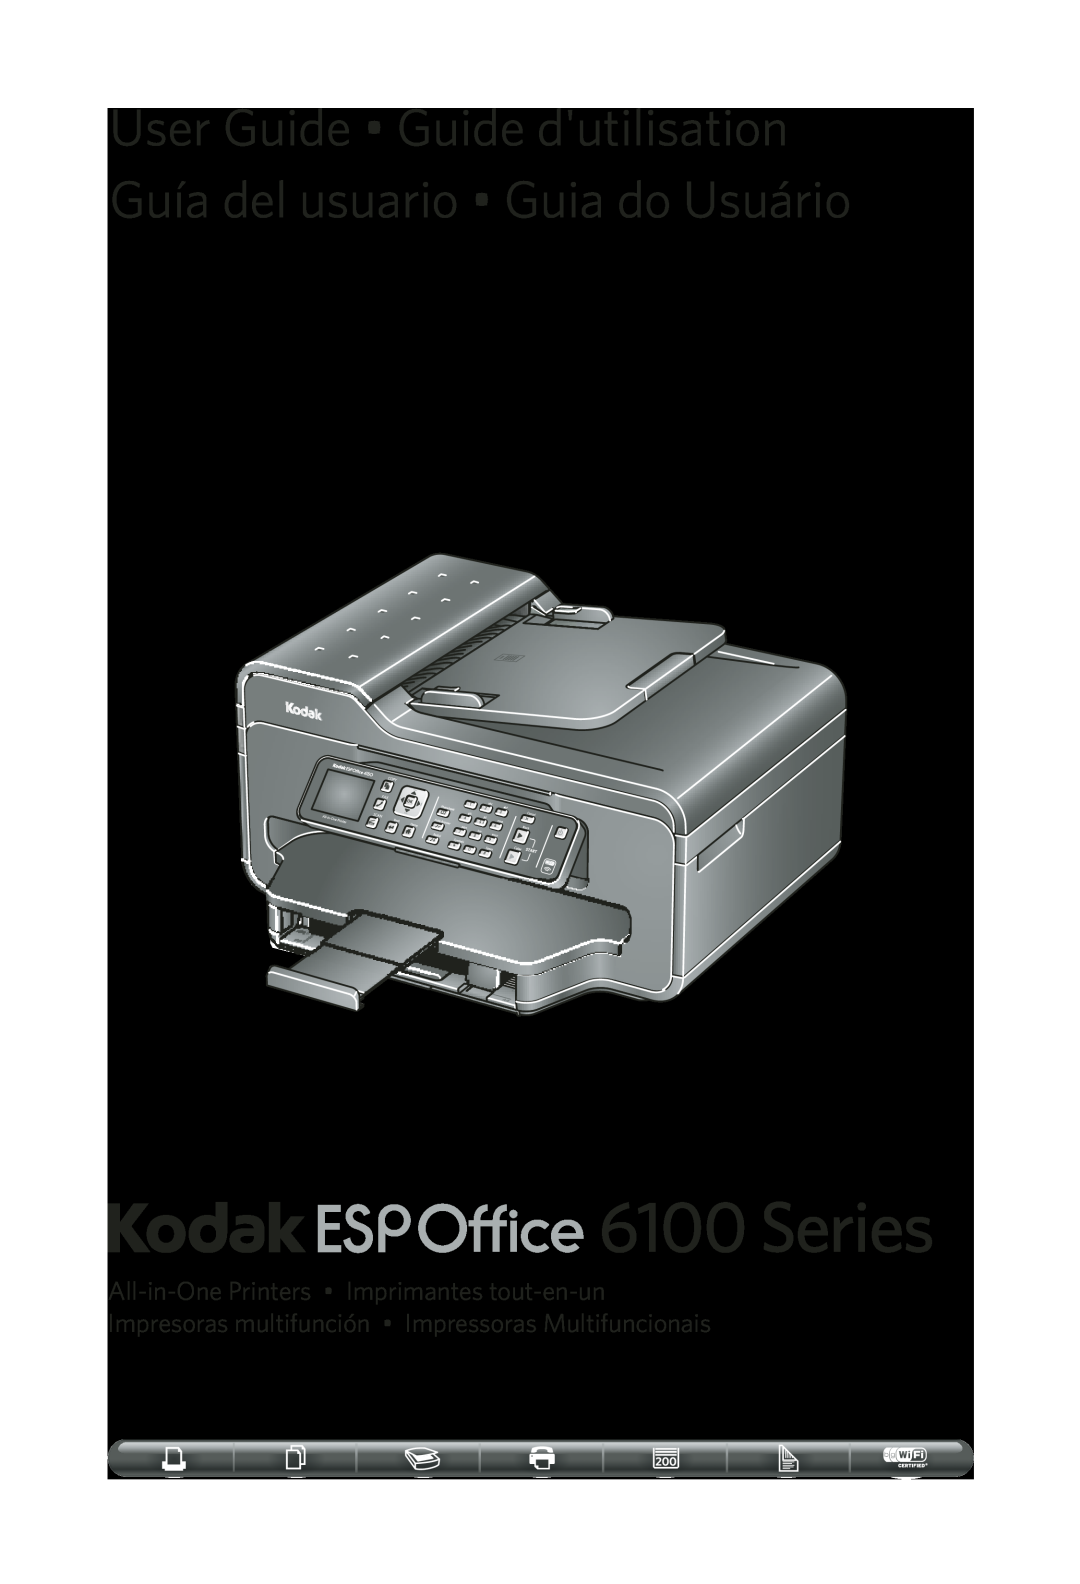 Kodak 6100 Series manual 